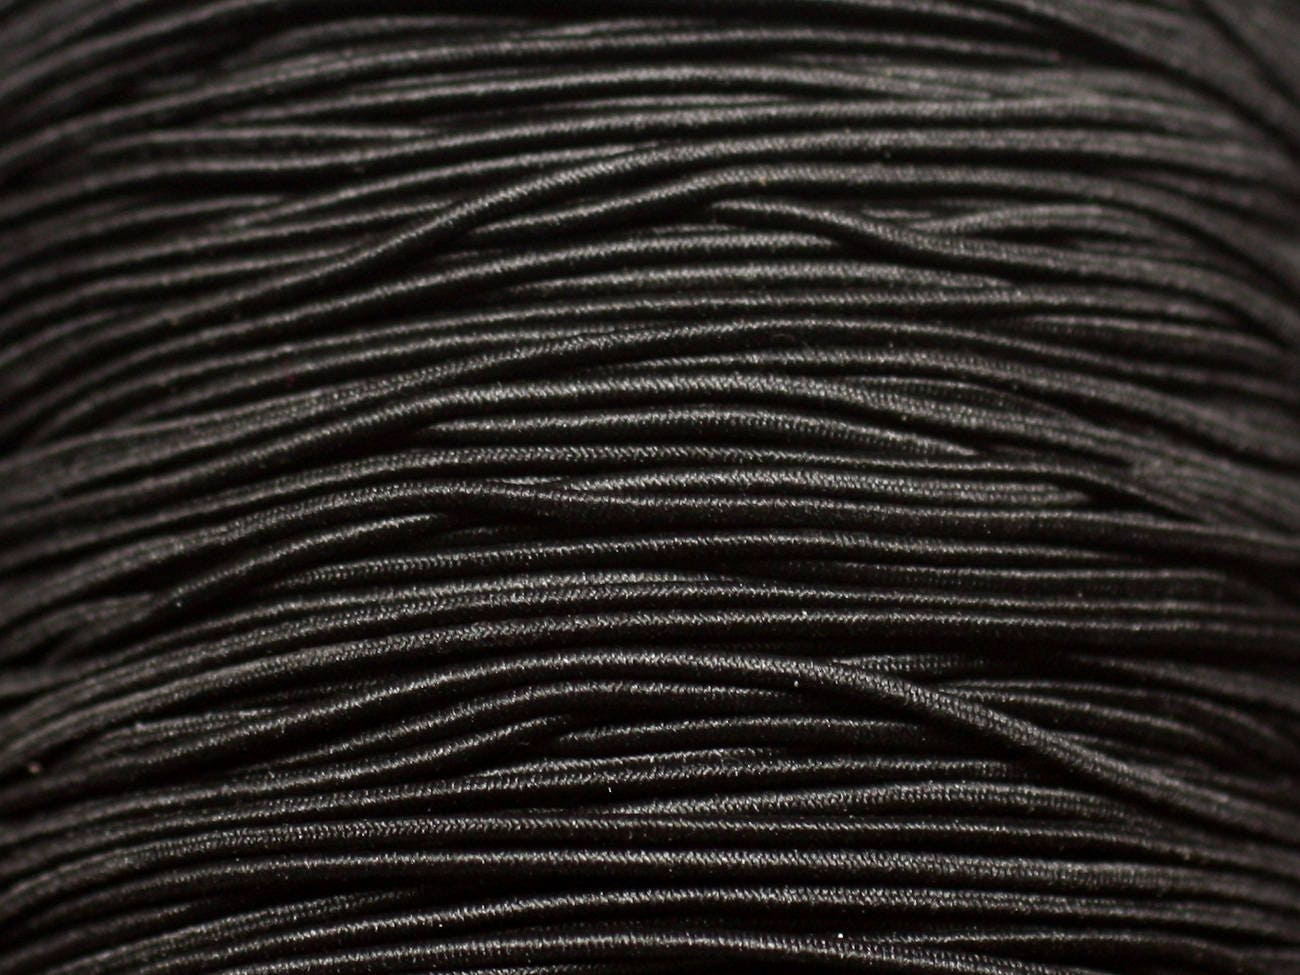 Bobine de fil Nylon Elastique 0,8mm Noir environ 10m creation